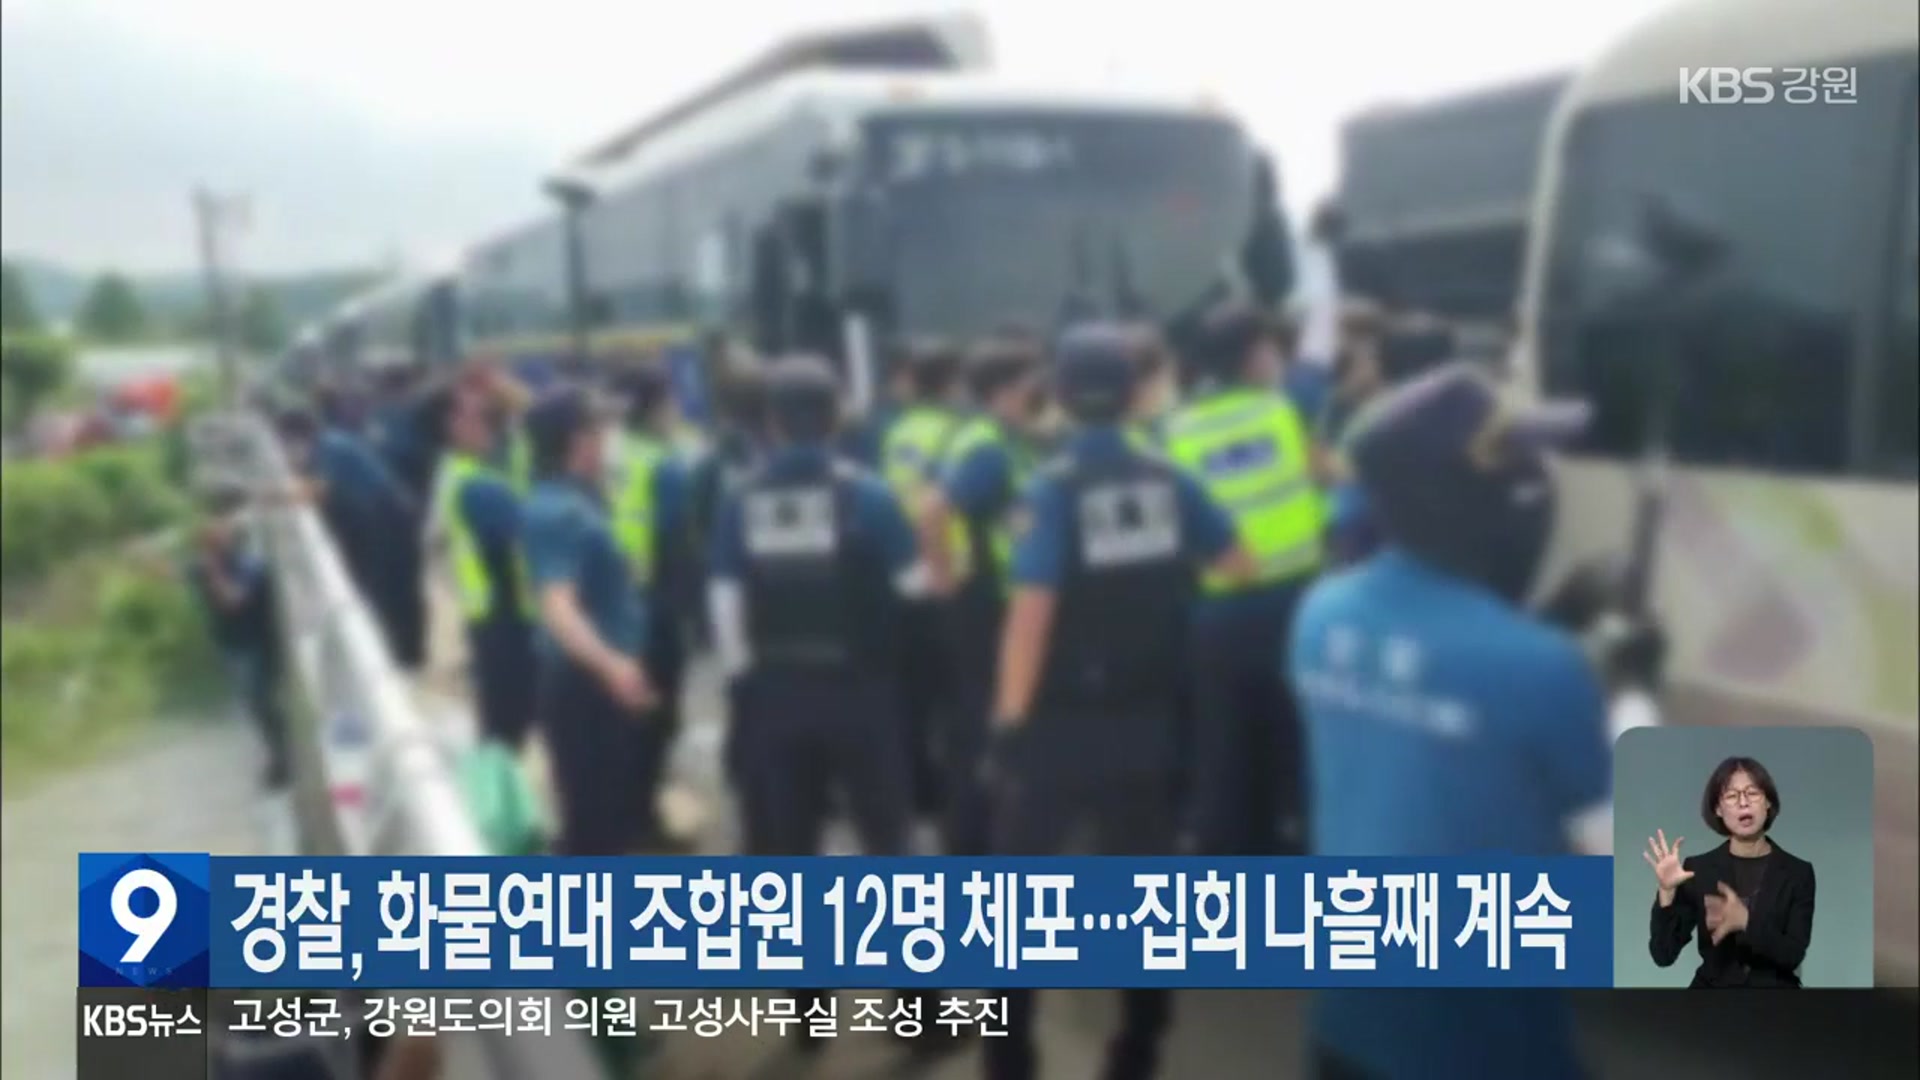 경찰, 화물연대 조합원 12명 체포…집회 나흘째 계속